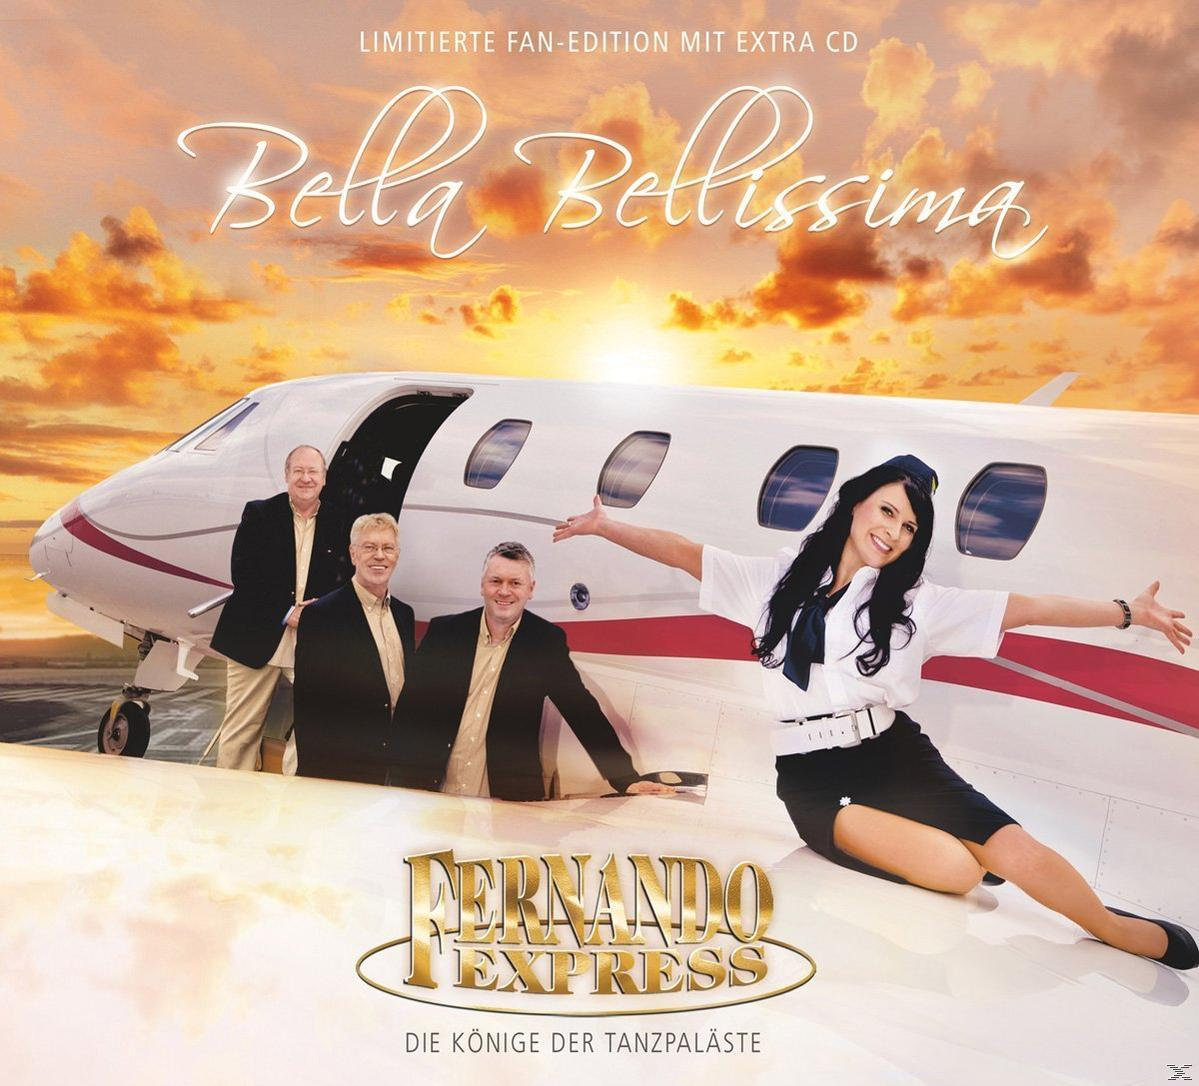 Fernando Express - (CD) (Limited Edition) Bellissima Bella - Fan